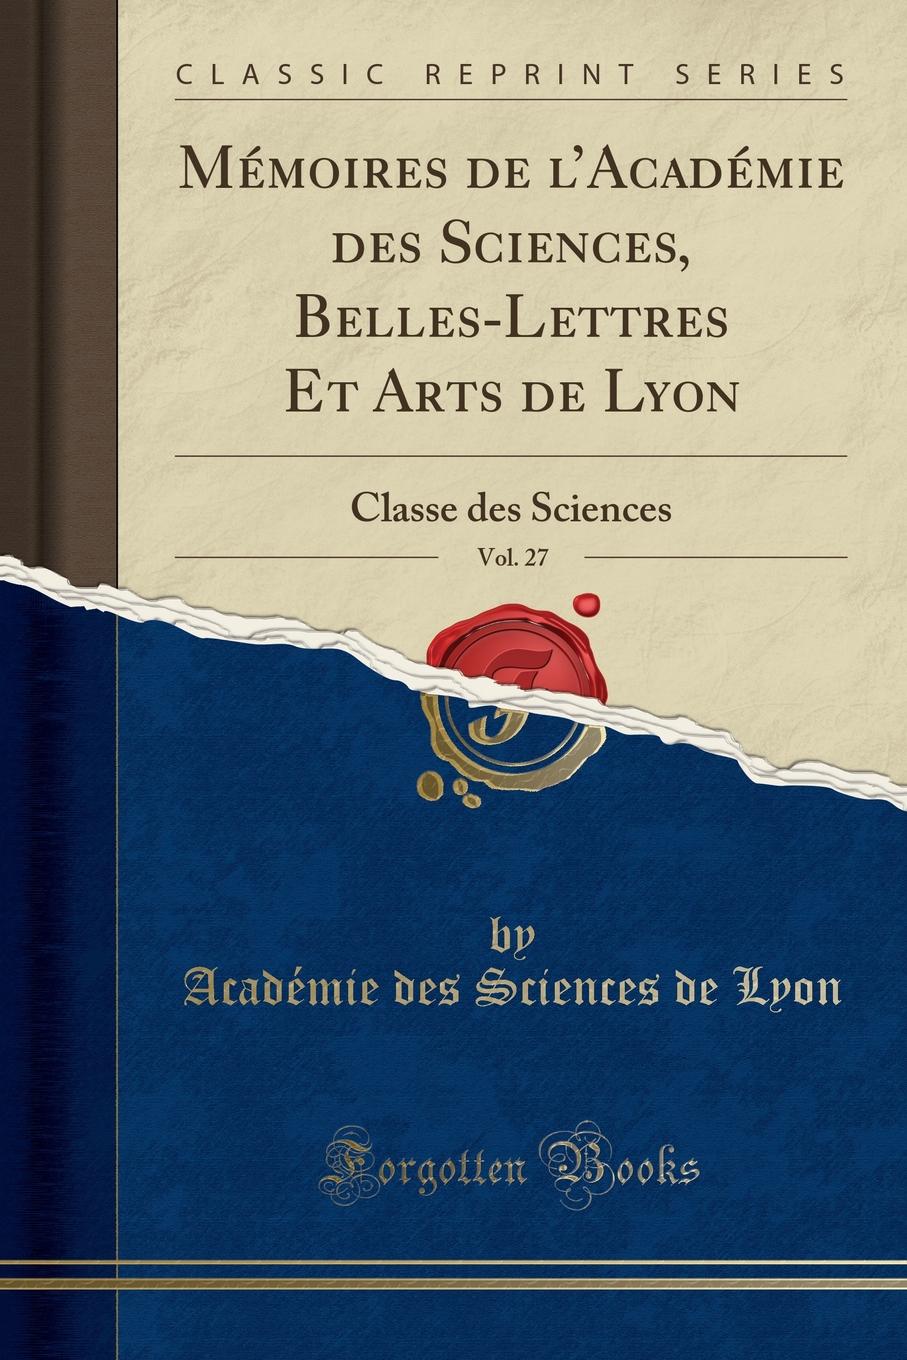 Académie des Sciences de Lyon Memoires de l.Academie des Sciences, Belles-Lettres Et Arts de Lyon, Vol. 27. Classe des Sciences (Classic Reprint)